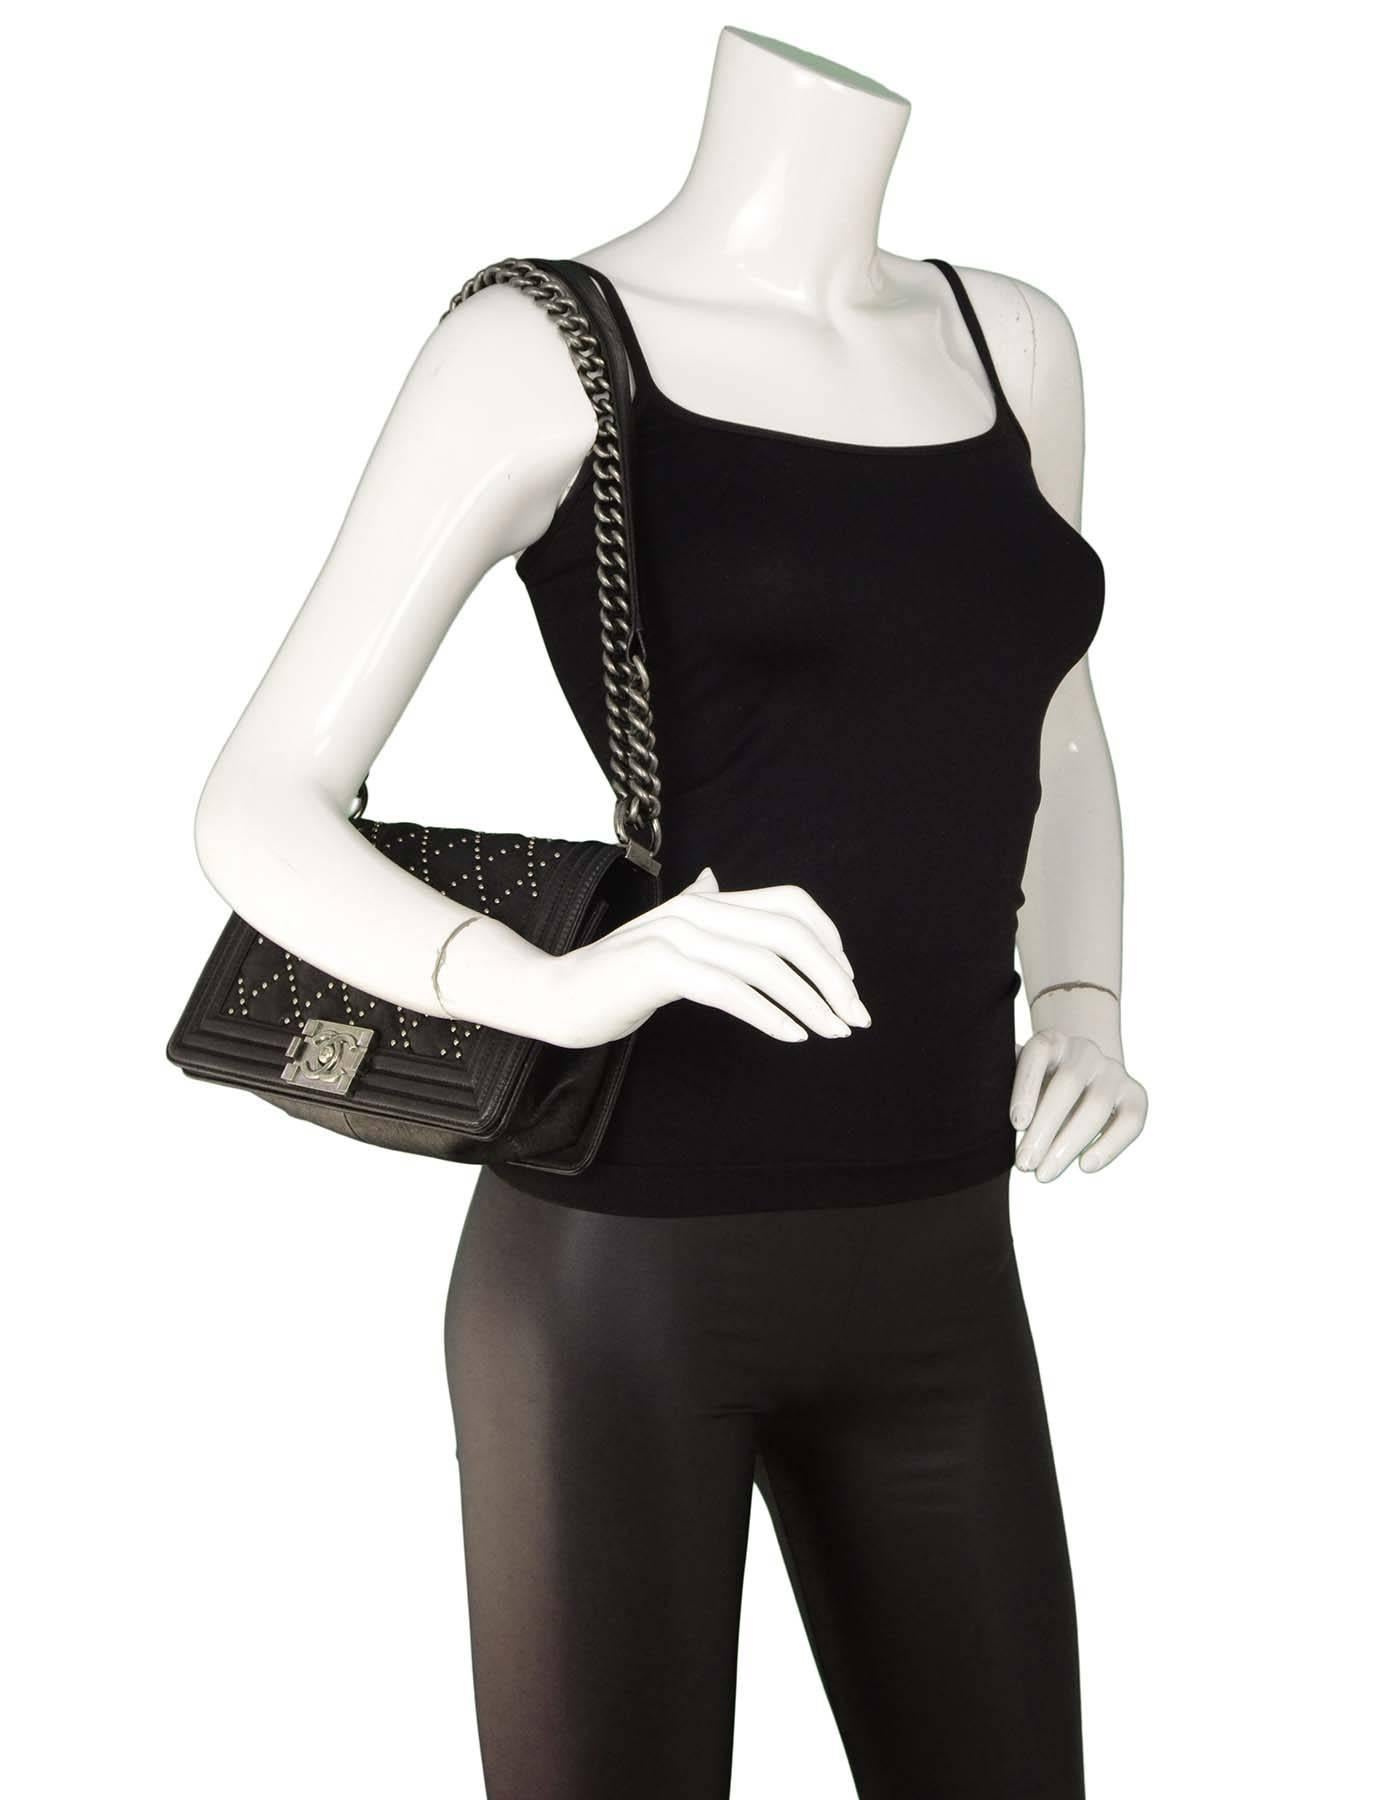 Chanel Limited Edition Black Distressed Leather Studded Medium Boy Bag SHW 3